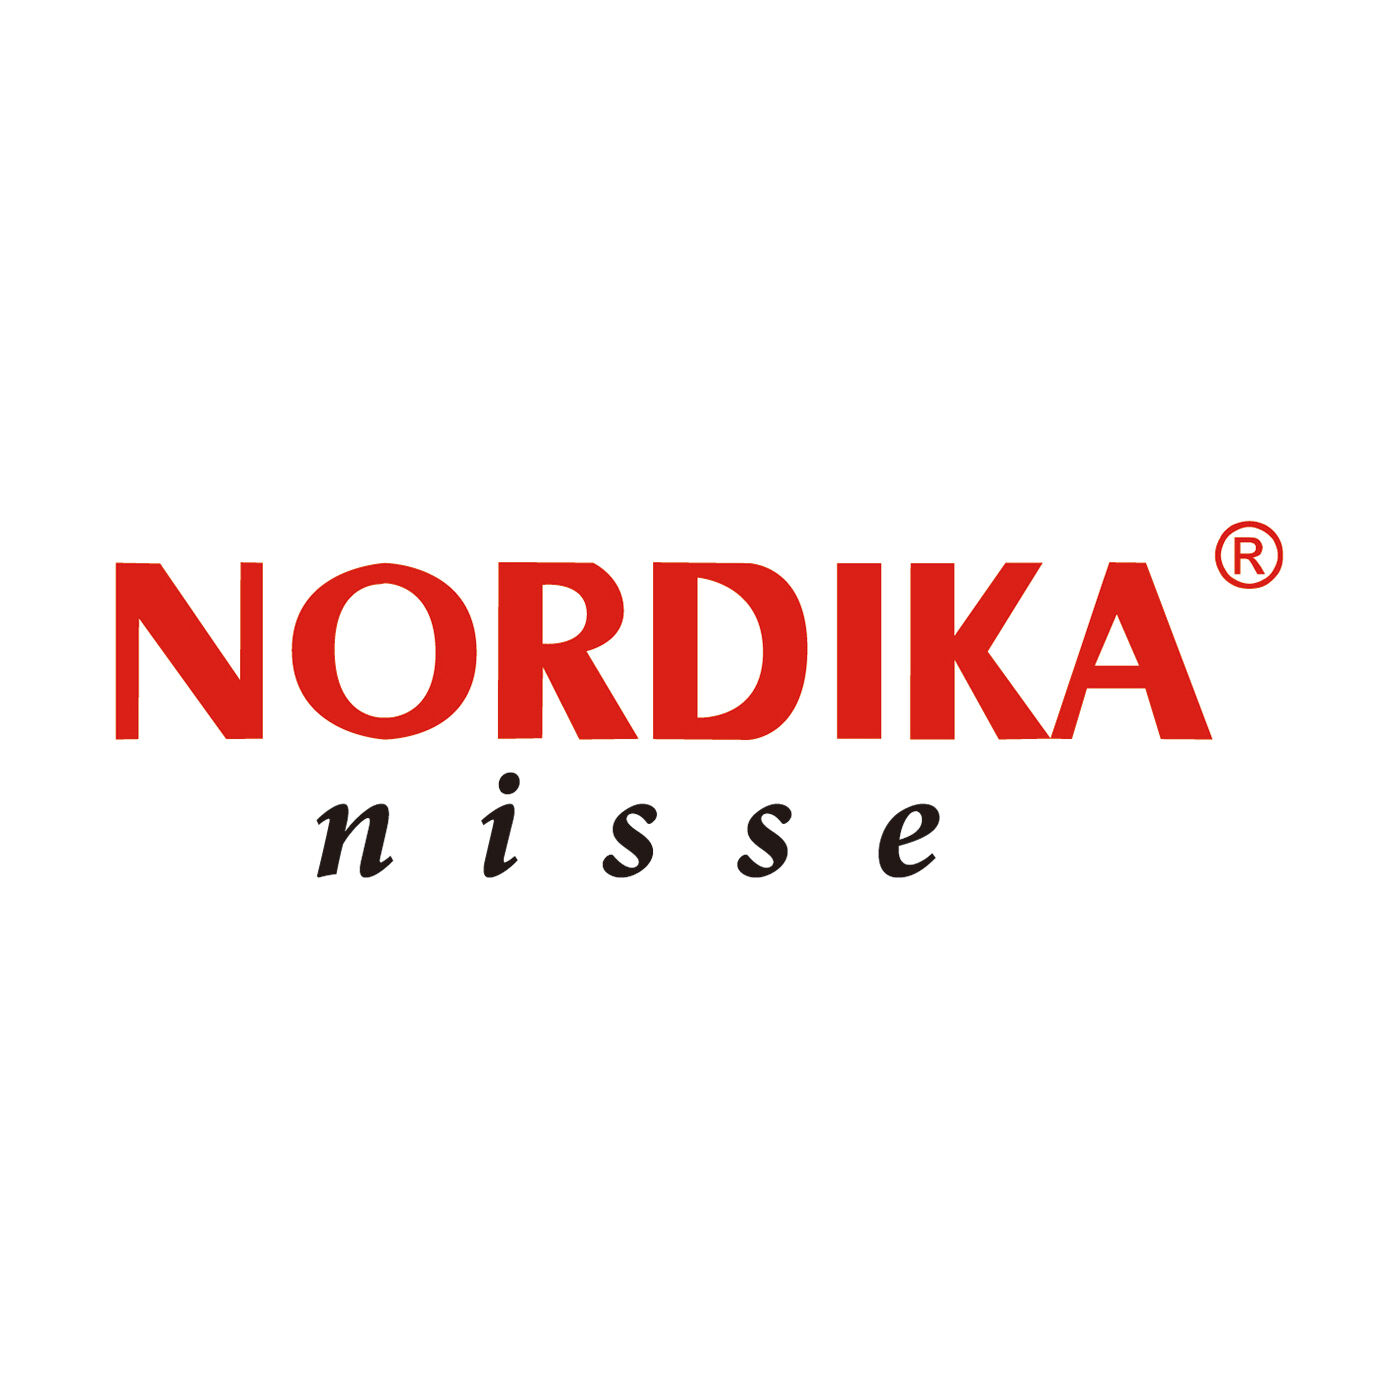 SeeMONO|ヨーロッパの職人が手作りした北欧の妖精〈白羊　大〉／ノルディカニッセ|NORDIKA nisse（ノルディカニッセ）は、Nordika Design（ノルディカデザイン社）が手掛けるハンドメイドの木製人形ブランドです。デンマークの妖精"ニッセ"をモチーフにした人形をつくり、世界に幸福を届けています。